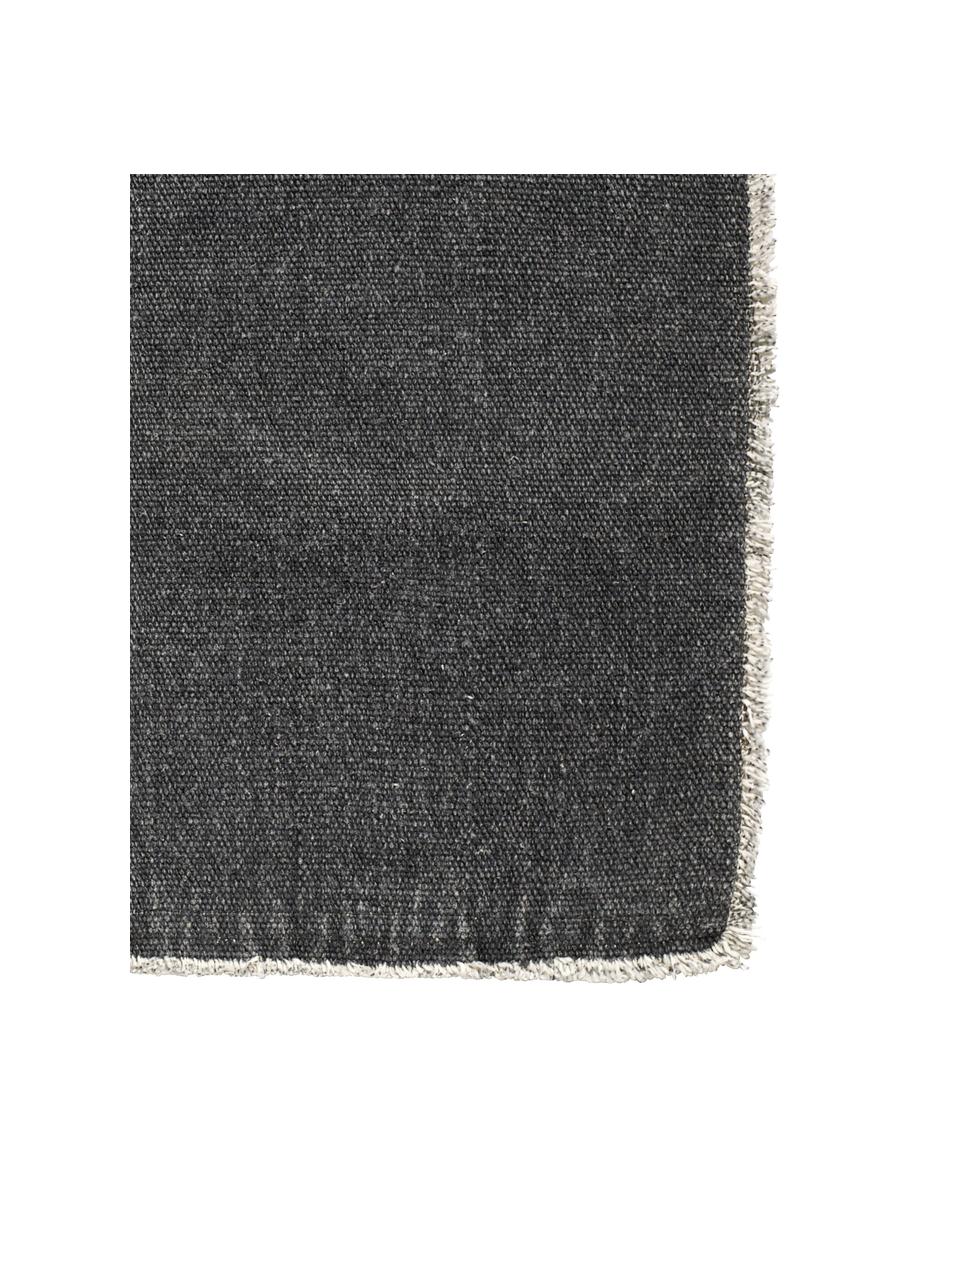 Baumwoll-Tischsets Edge, 6 Stück, Baumwollgemisch, stonewashed, Dunkelgrau, 35 x 48 cm